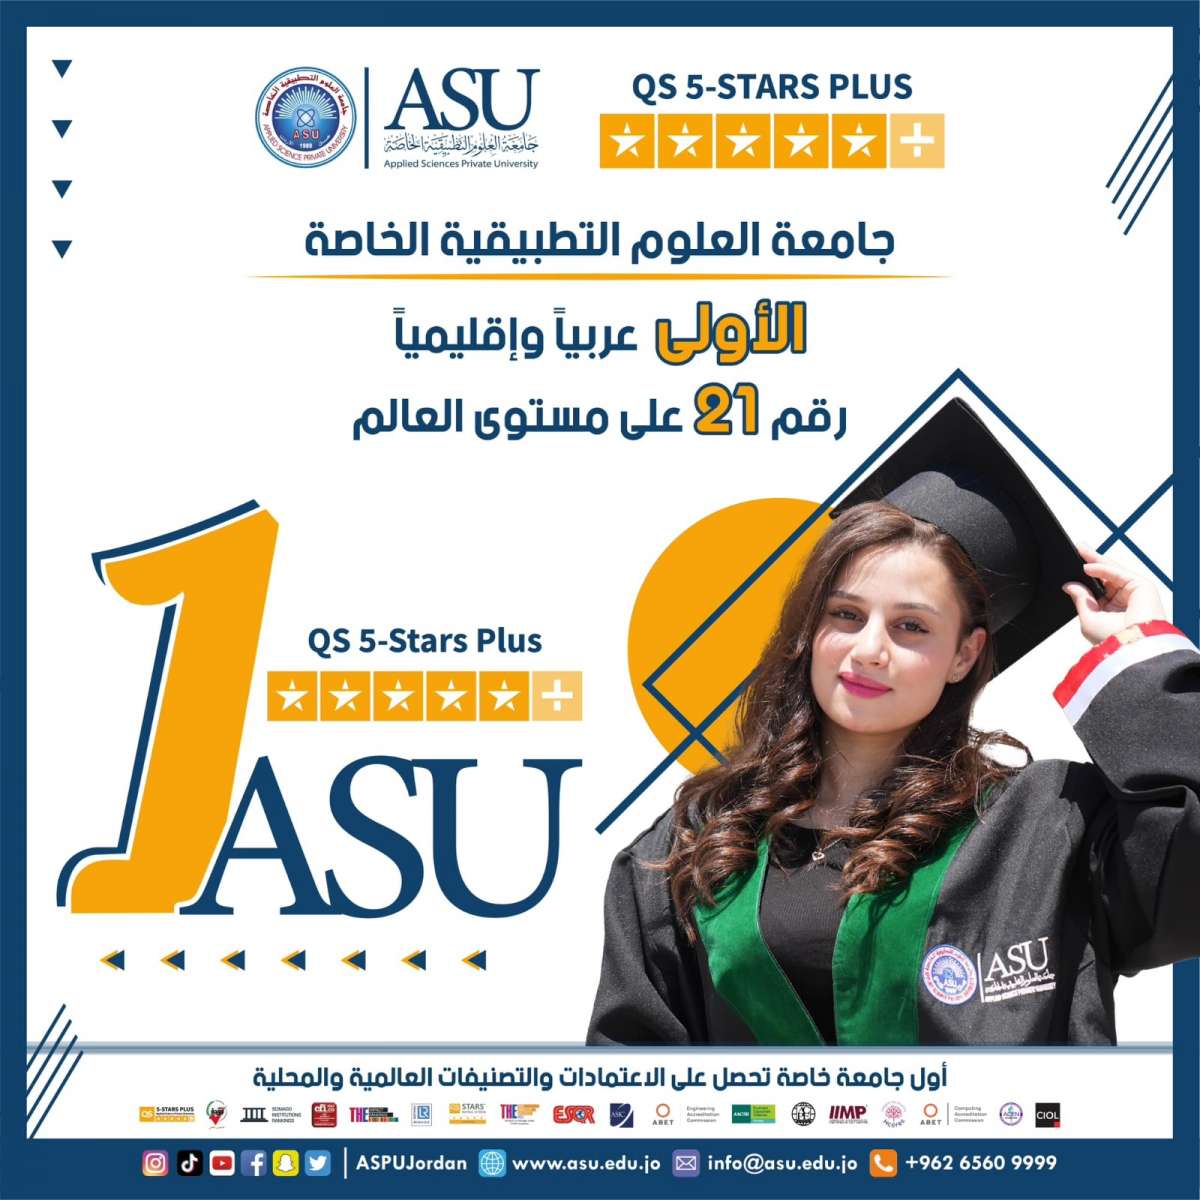 التطبيقية الخاصة هي الجامعة الأولى والوحيدة محليا واقليميا وفي المرتبة 21 عالميا الحاصلة على تقييم (5 stars plus في تقييم QS stars rating)